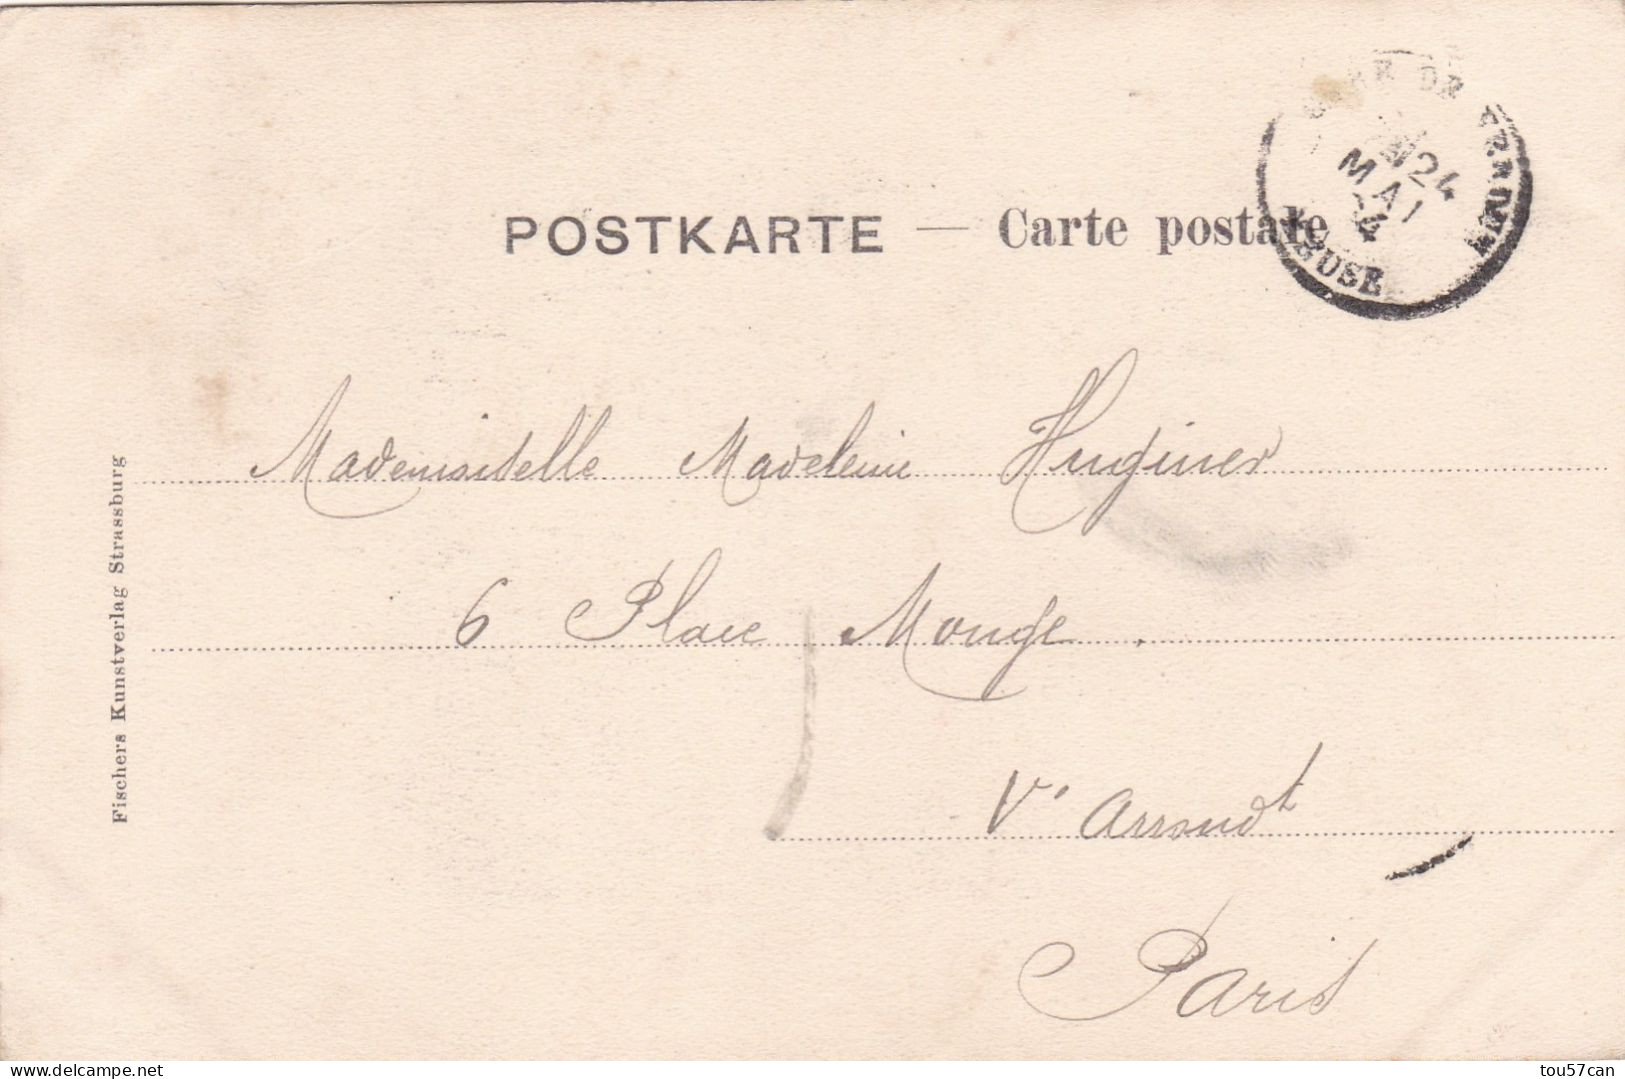 LORRAINE - LOTHRINGERIN - CPA PRECURSEUR DE 1904 EN COULEURS. - Lorraine